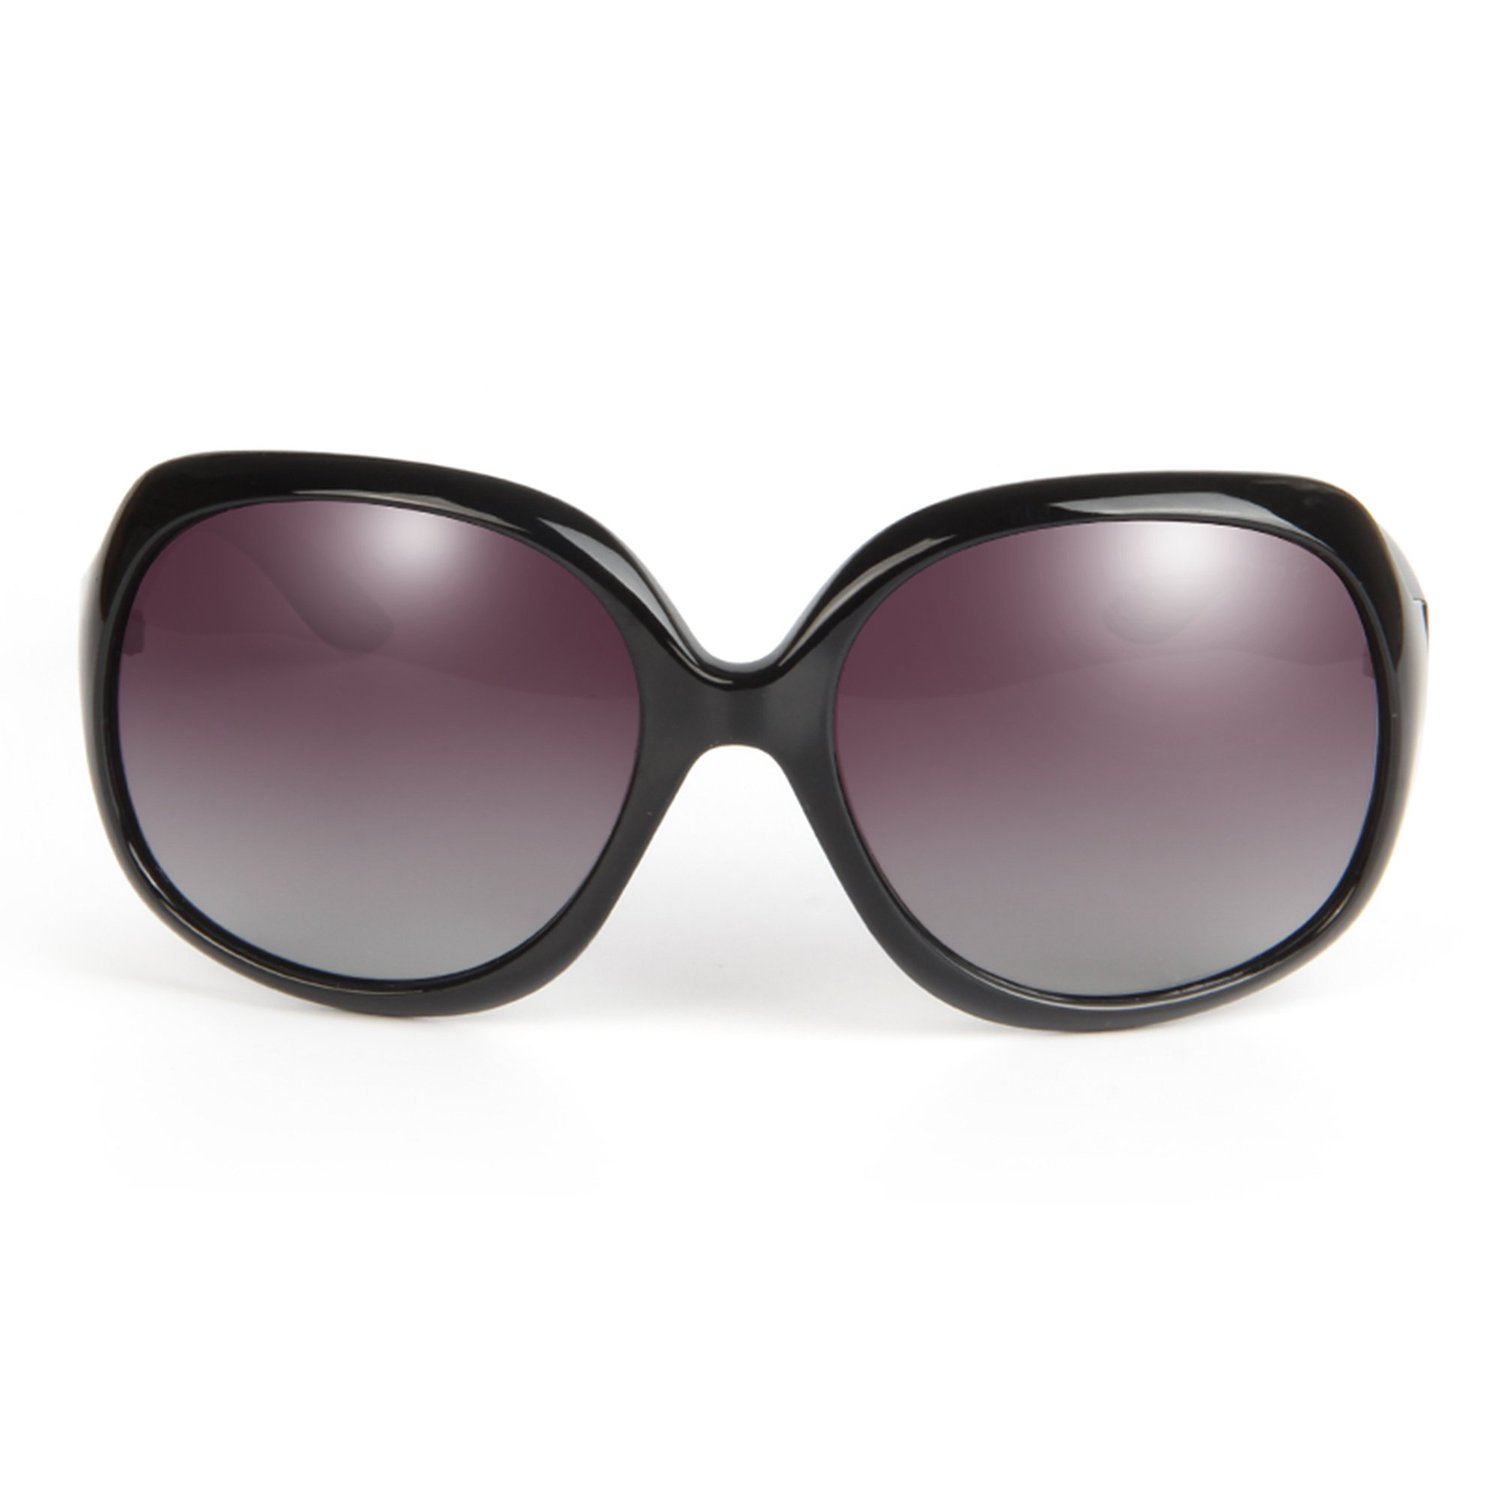 LianSan Designer Fashion Large Oversized Vintage UV400 Protection Polarized Women Sunglasses 3113